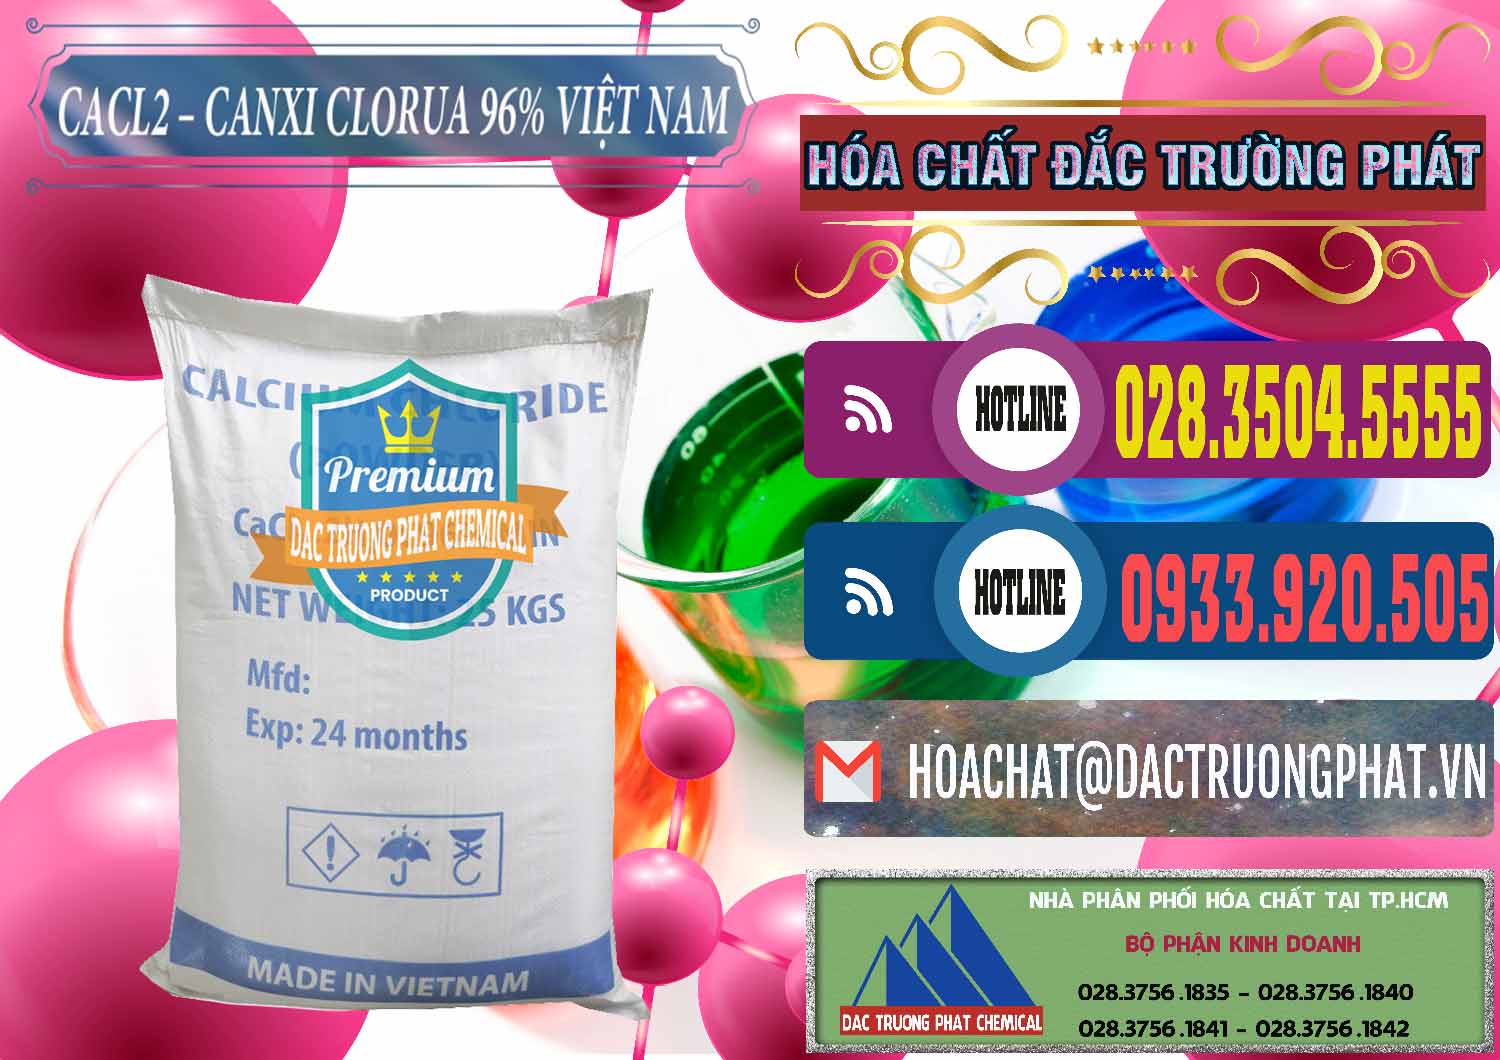 Cty chuyên kinh doanh & cung cấp CaCl2 – Canxi Clorua 96% Việt Nam - 0236 - Nơi chuyên cung ứng và bán hóa chất tại TP.HCM - muabanhoachat.com.vn